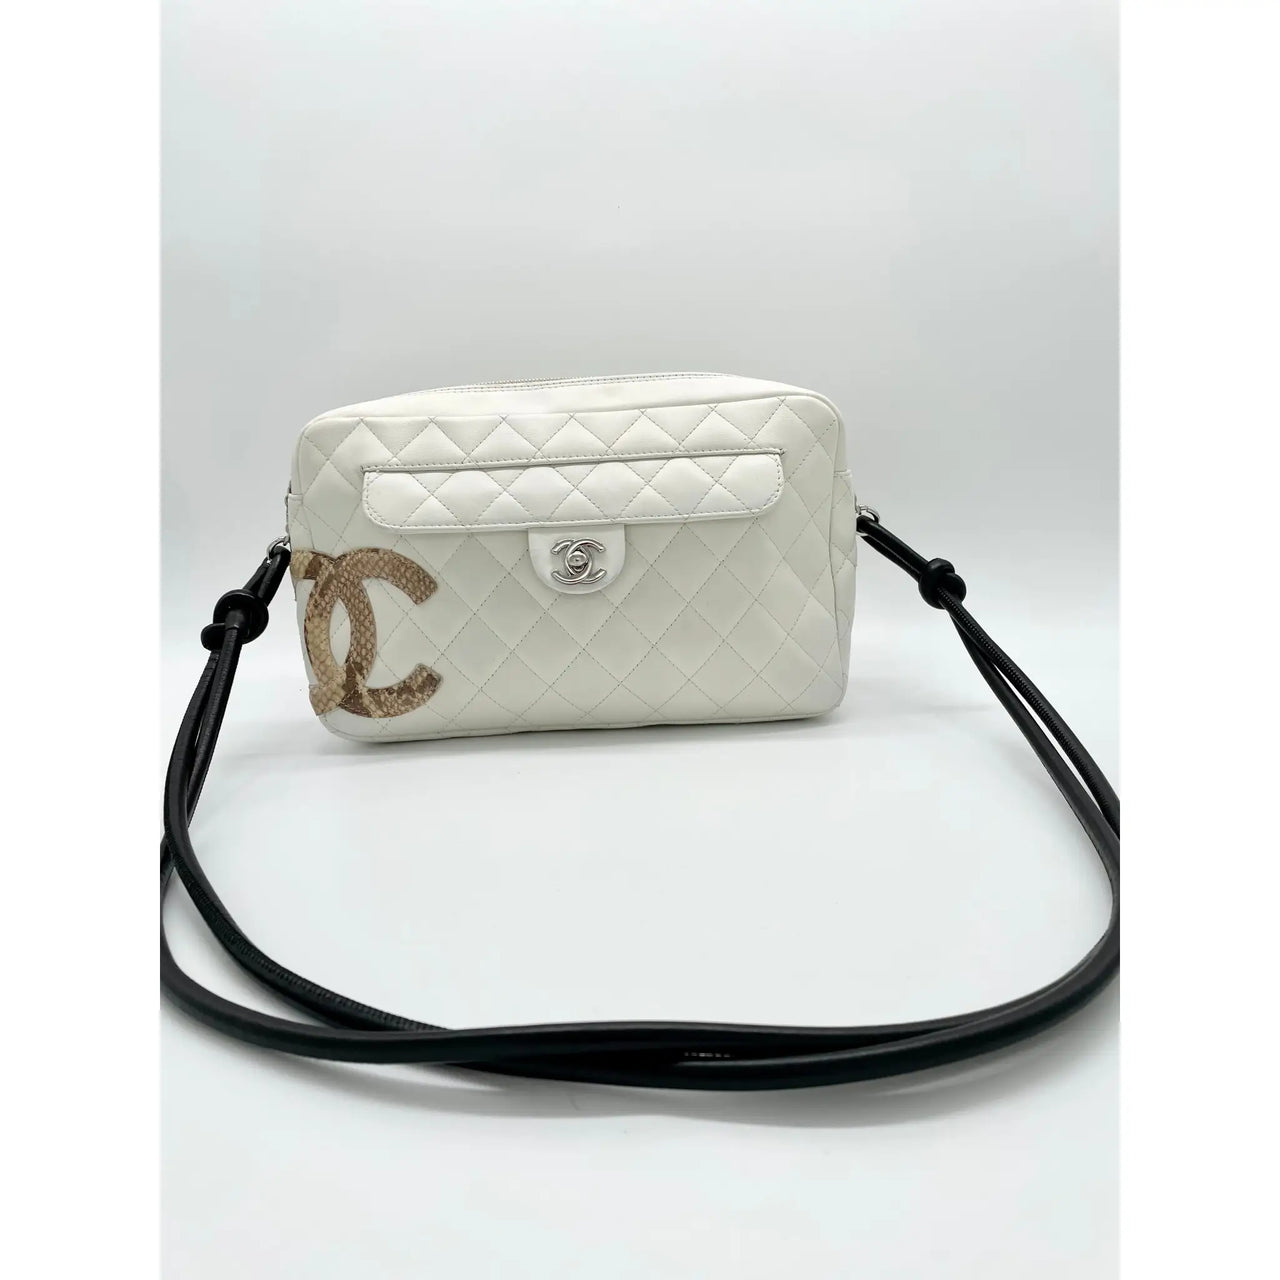 Chanel Cambon Ligne Shopper  Chanel cambon, Vintage chanel, Chanel